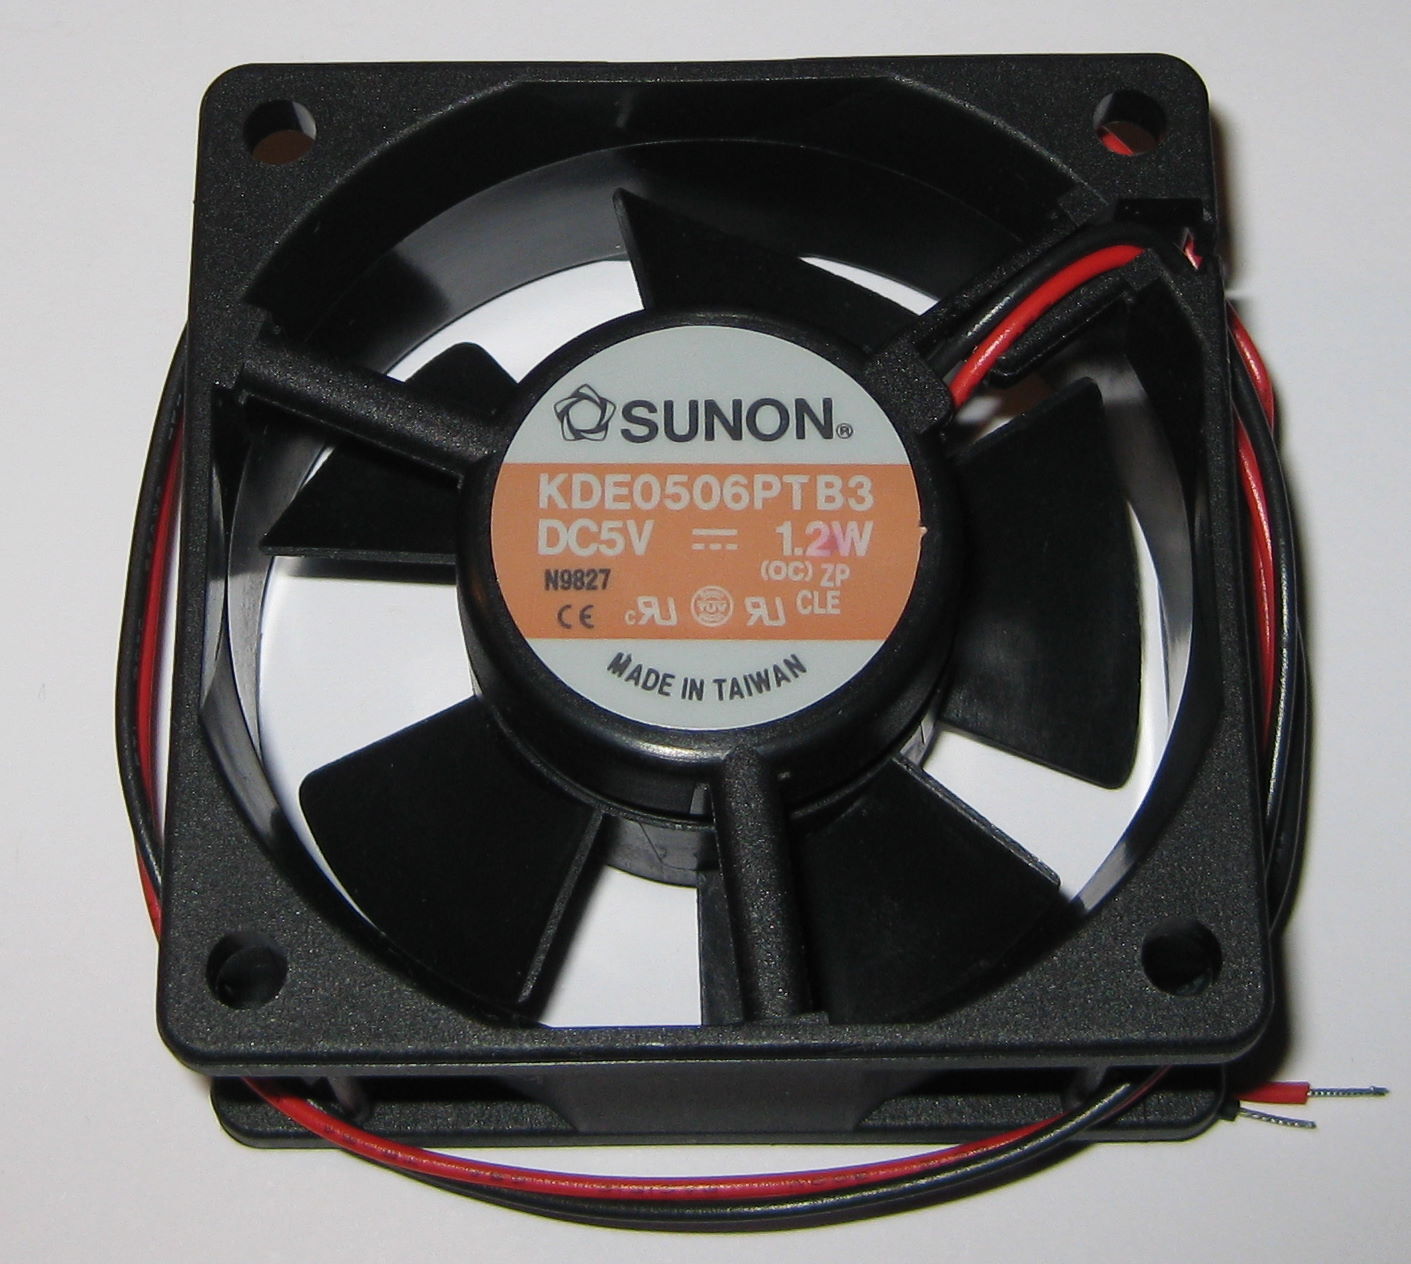 Sunon 60 mm Quiet Fan - 5 V - 16 CFM - 3300 RPM - KDE0506 - 4 to 6 VDC - 1.2 W